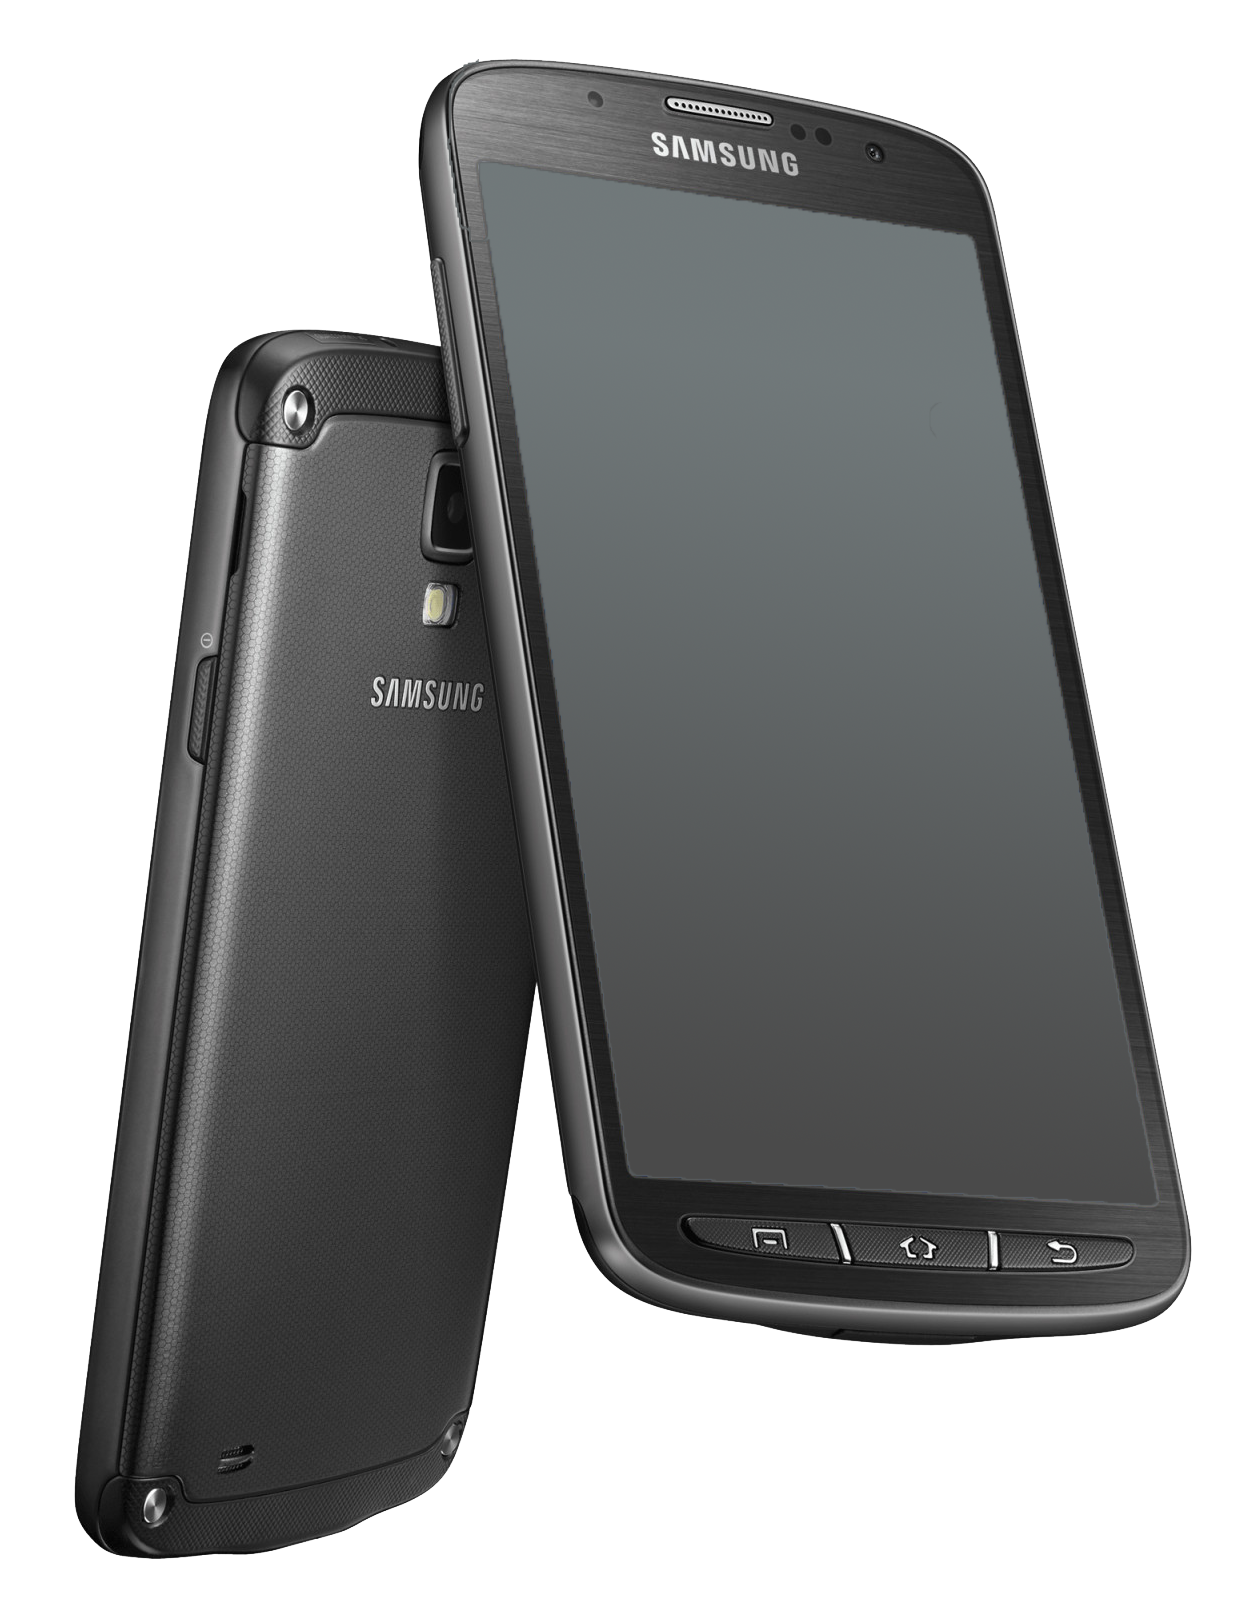 Samsung Galaxy S4 Active i9295 schwarz - Ohne Vertrag